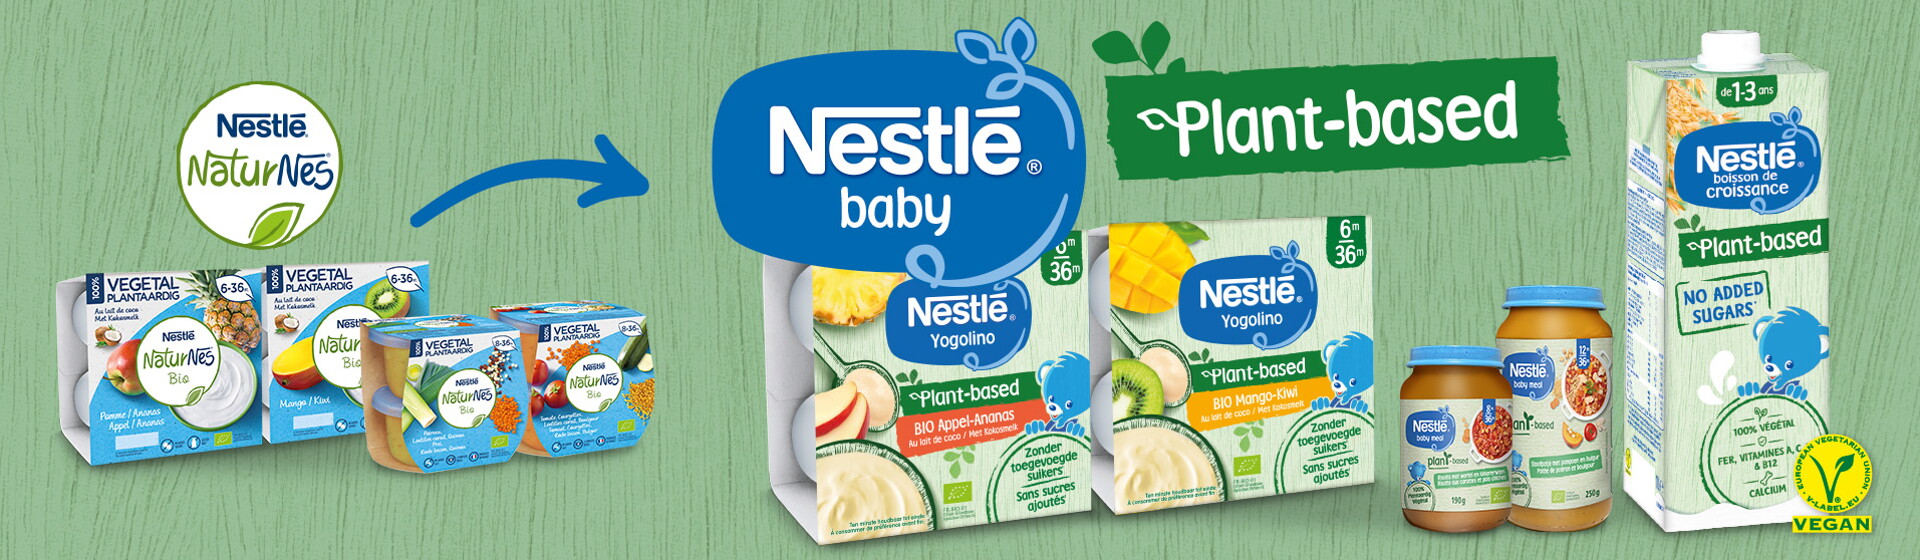 Nestlé Naturnes Bio wordt Nestlé Baby Plant-based